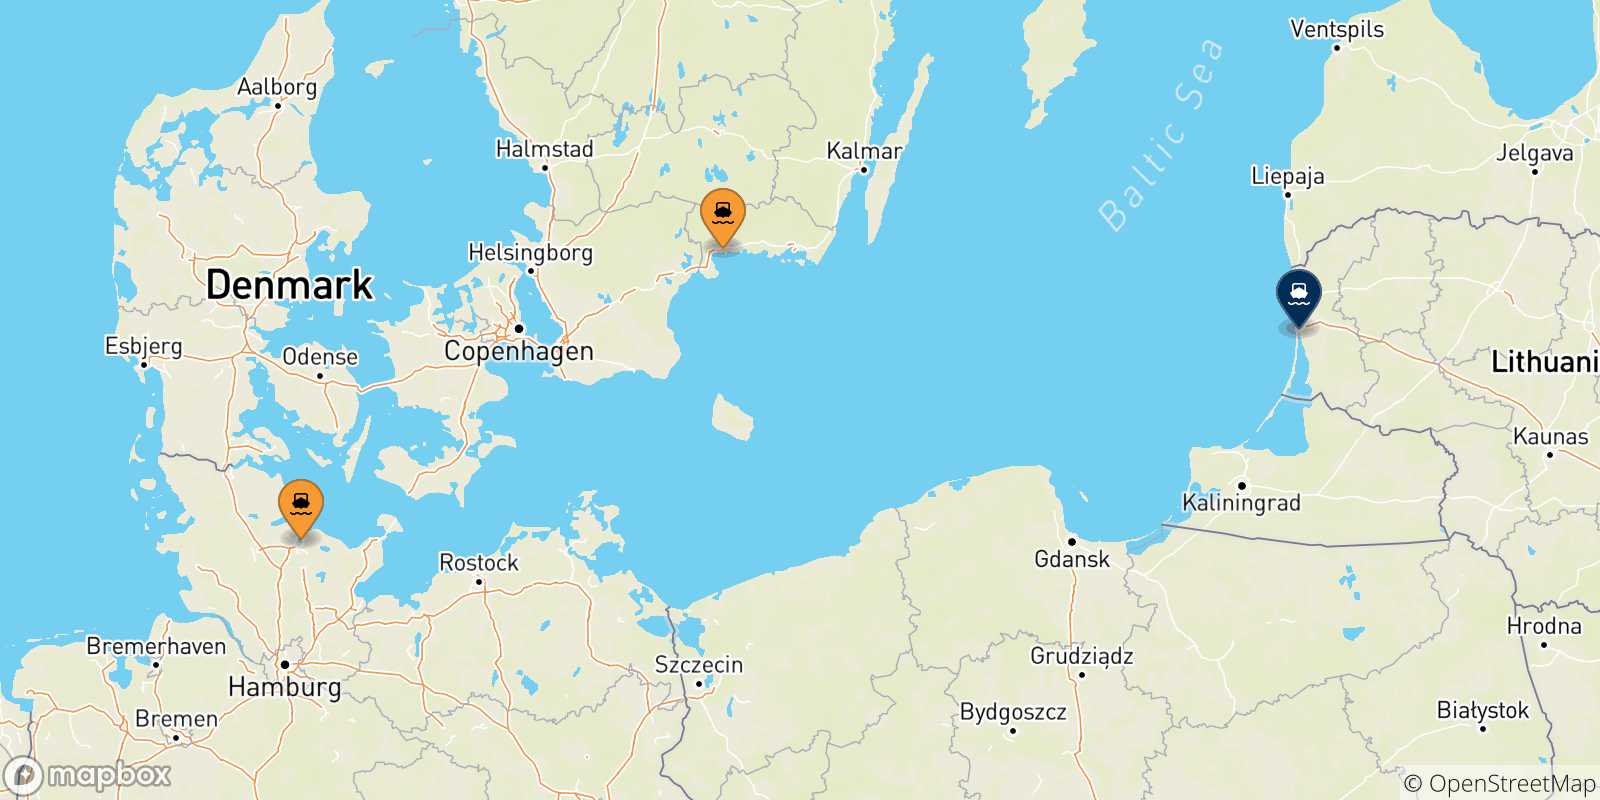 Mappa dei porti collegati con la Lituania